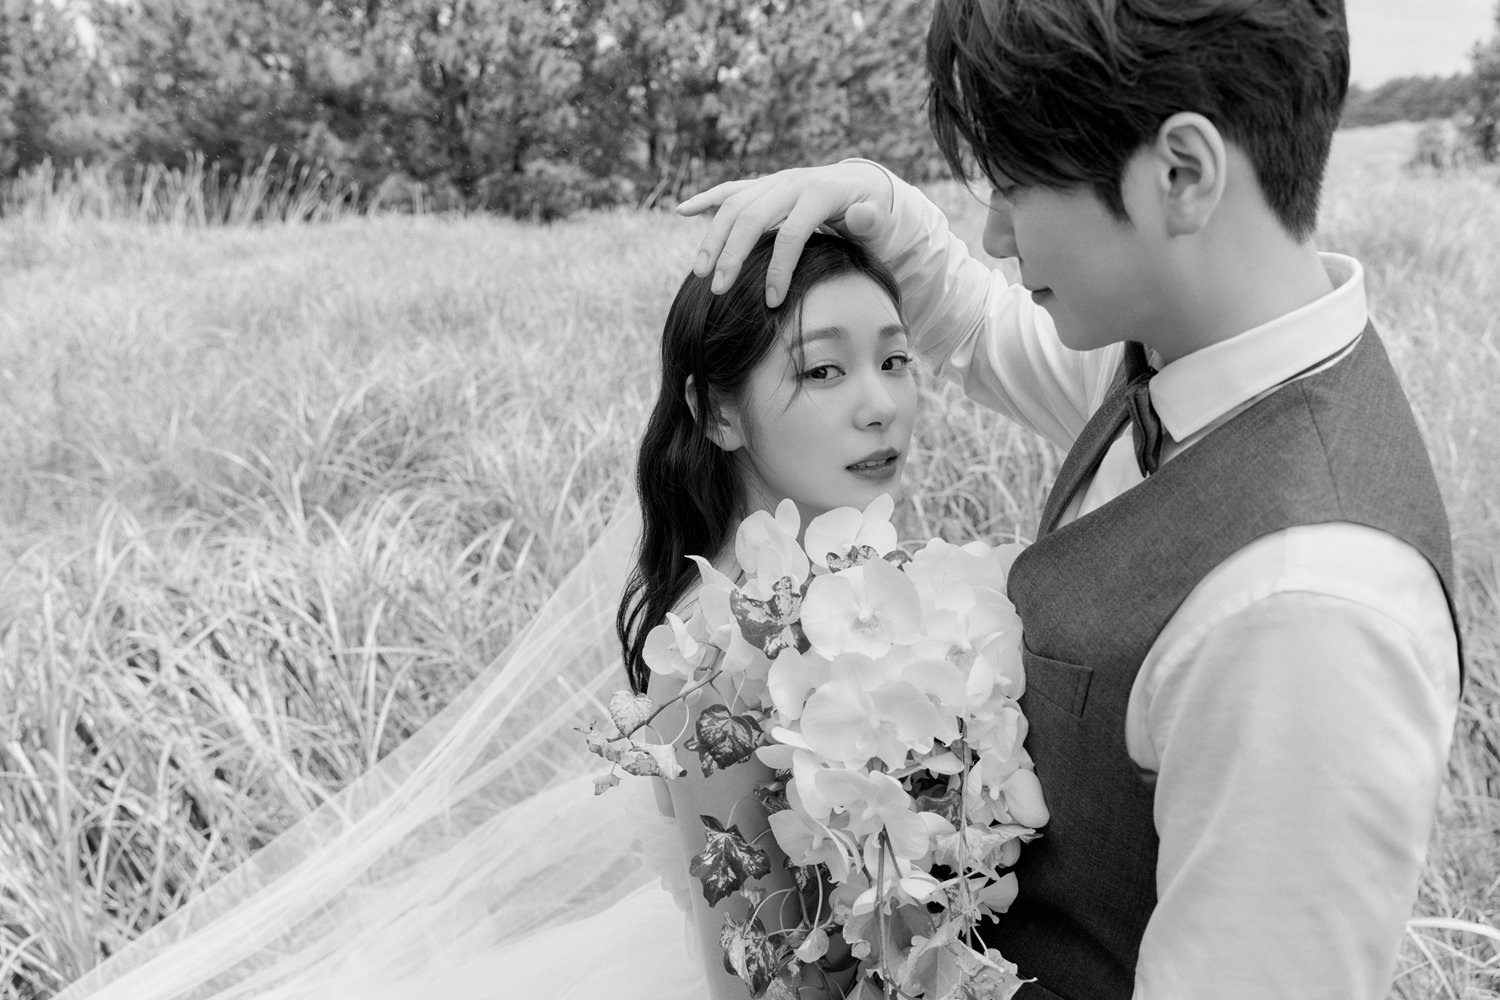 Sau 3 năm bên nhau, Kim Yuna và Ko Woo Rim đã chính thức về chung một nhà. Cặp đôi nhận được rất nhiều lời chúc phúc từ người hâm mộ, khán giả. Ảnh: Twitter